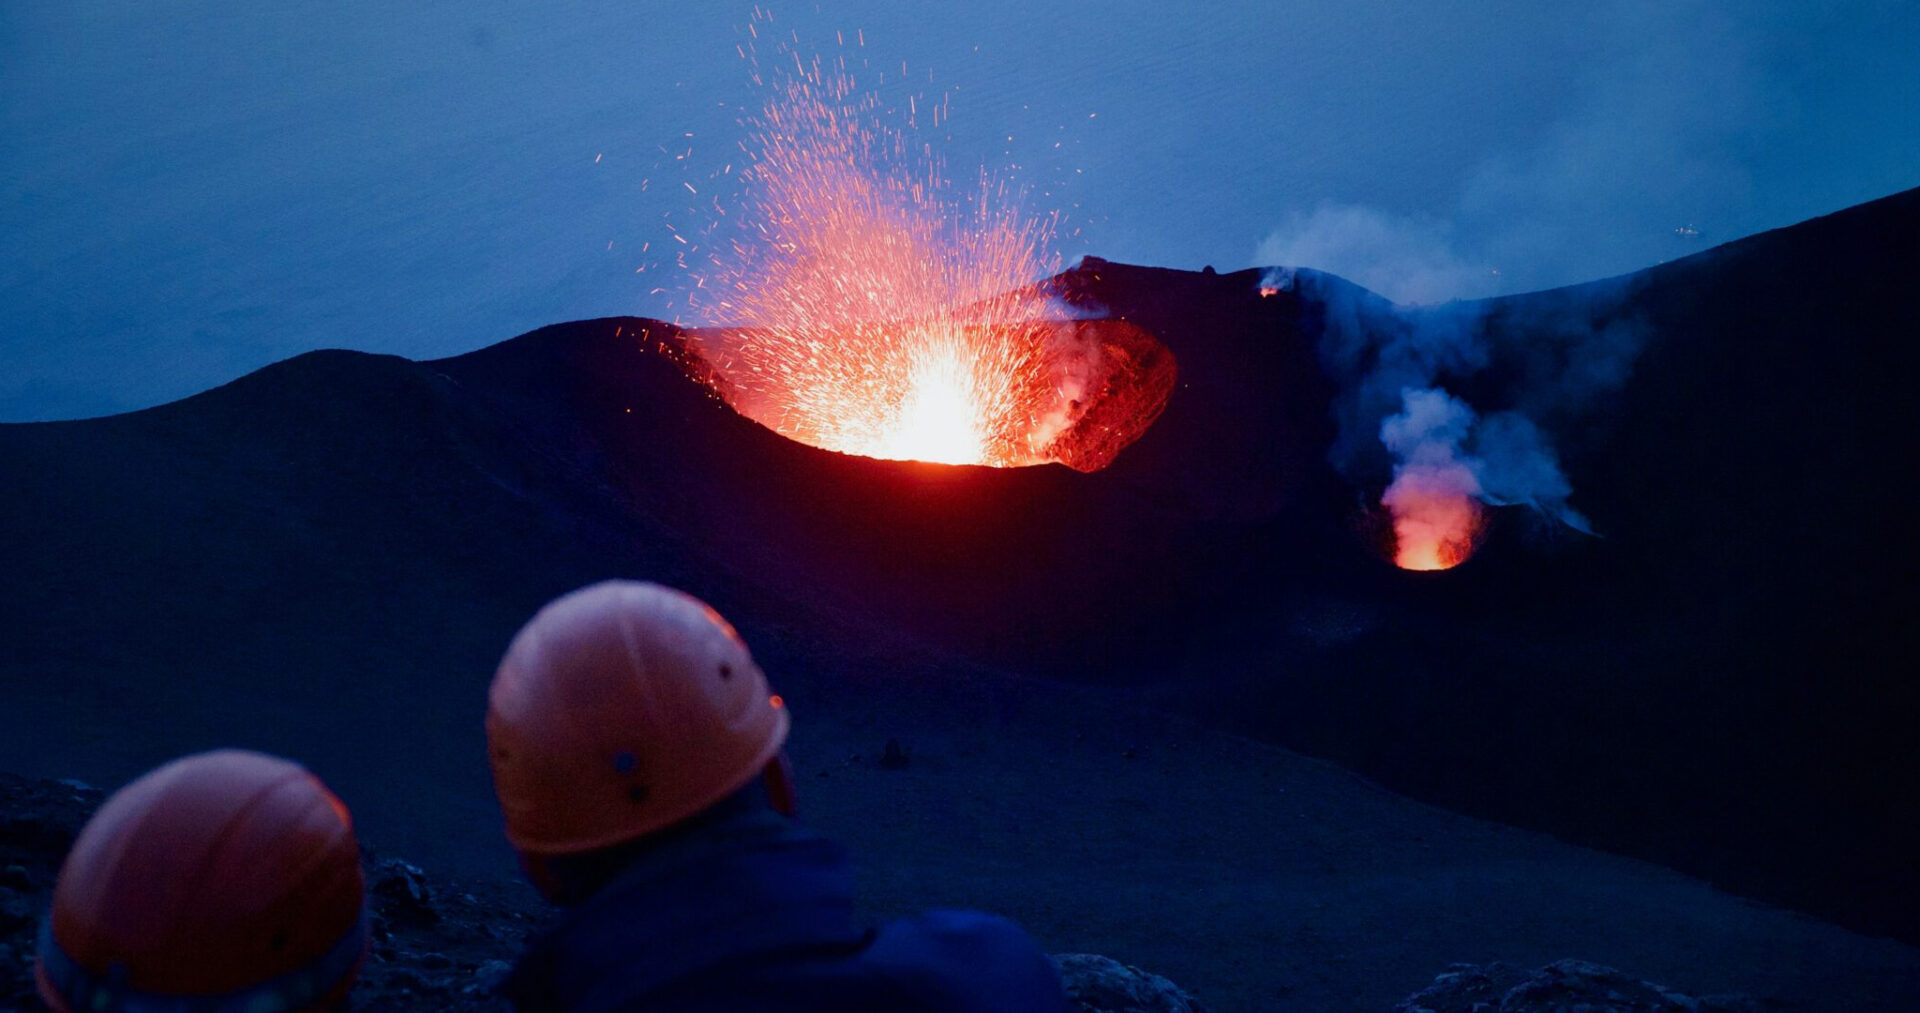 La pericolosità vulcanica e i beni culturali a rischio - Openpolis